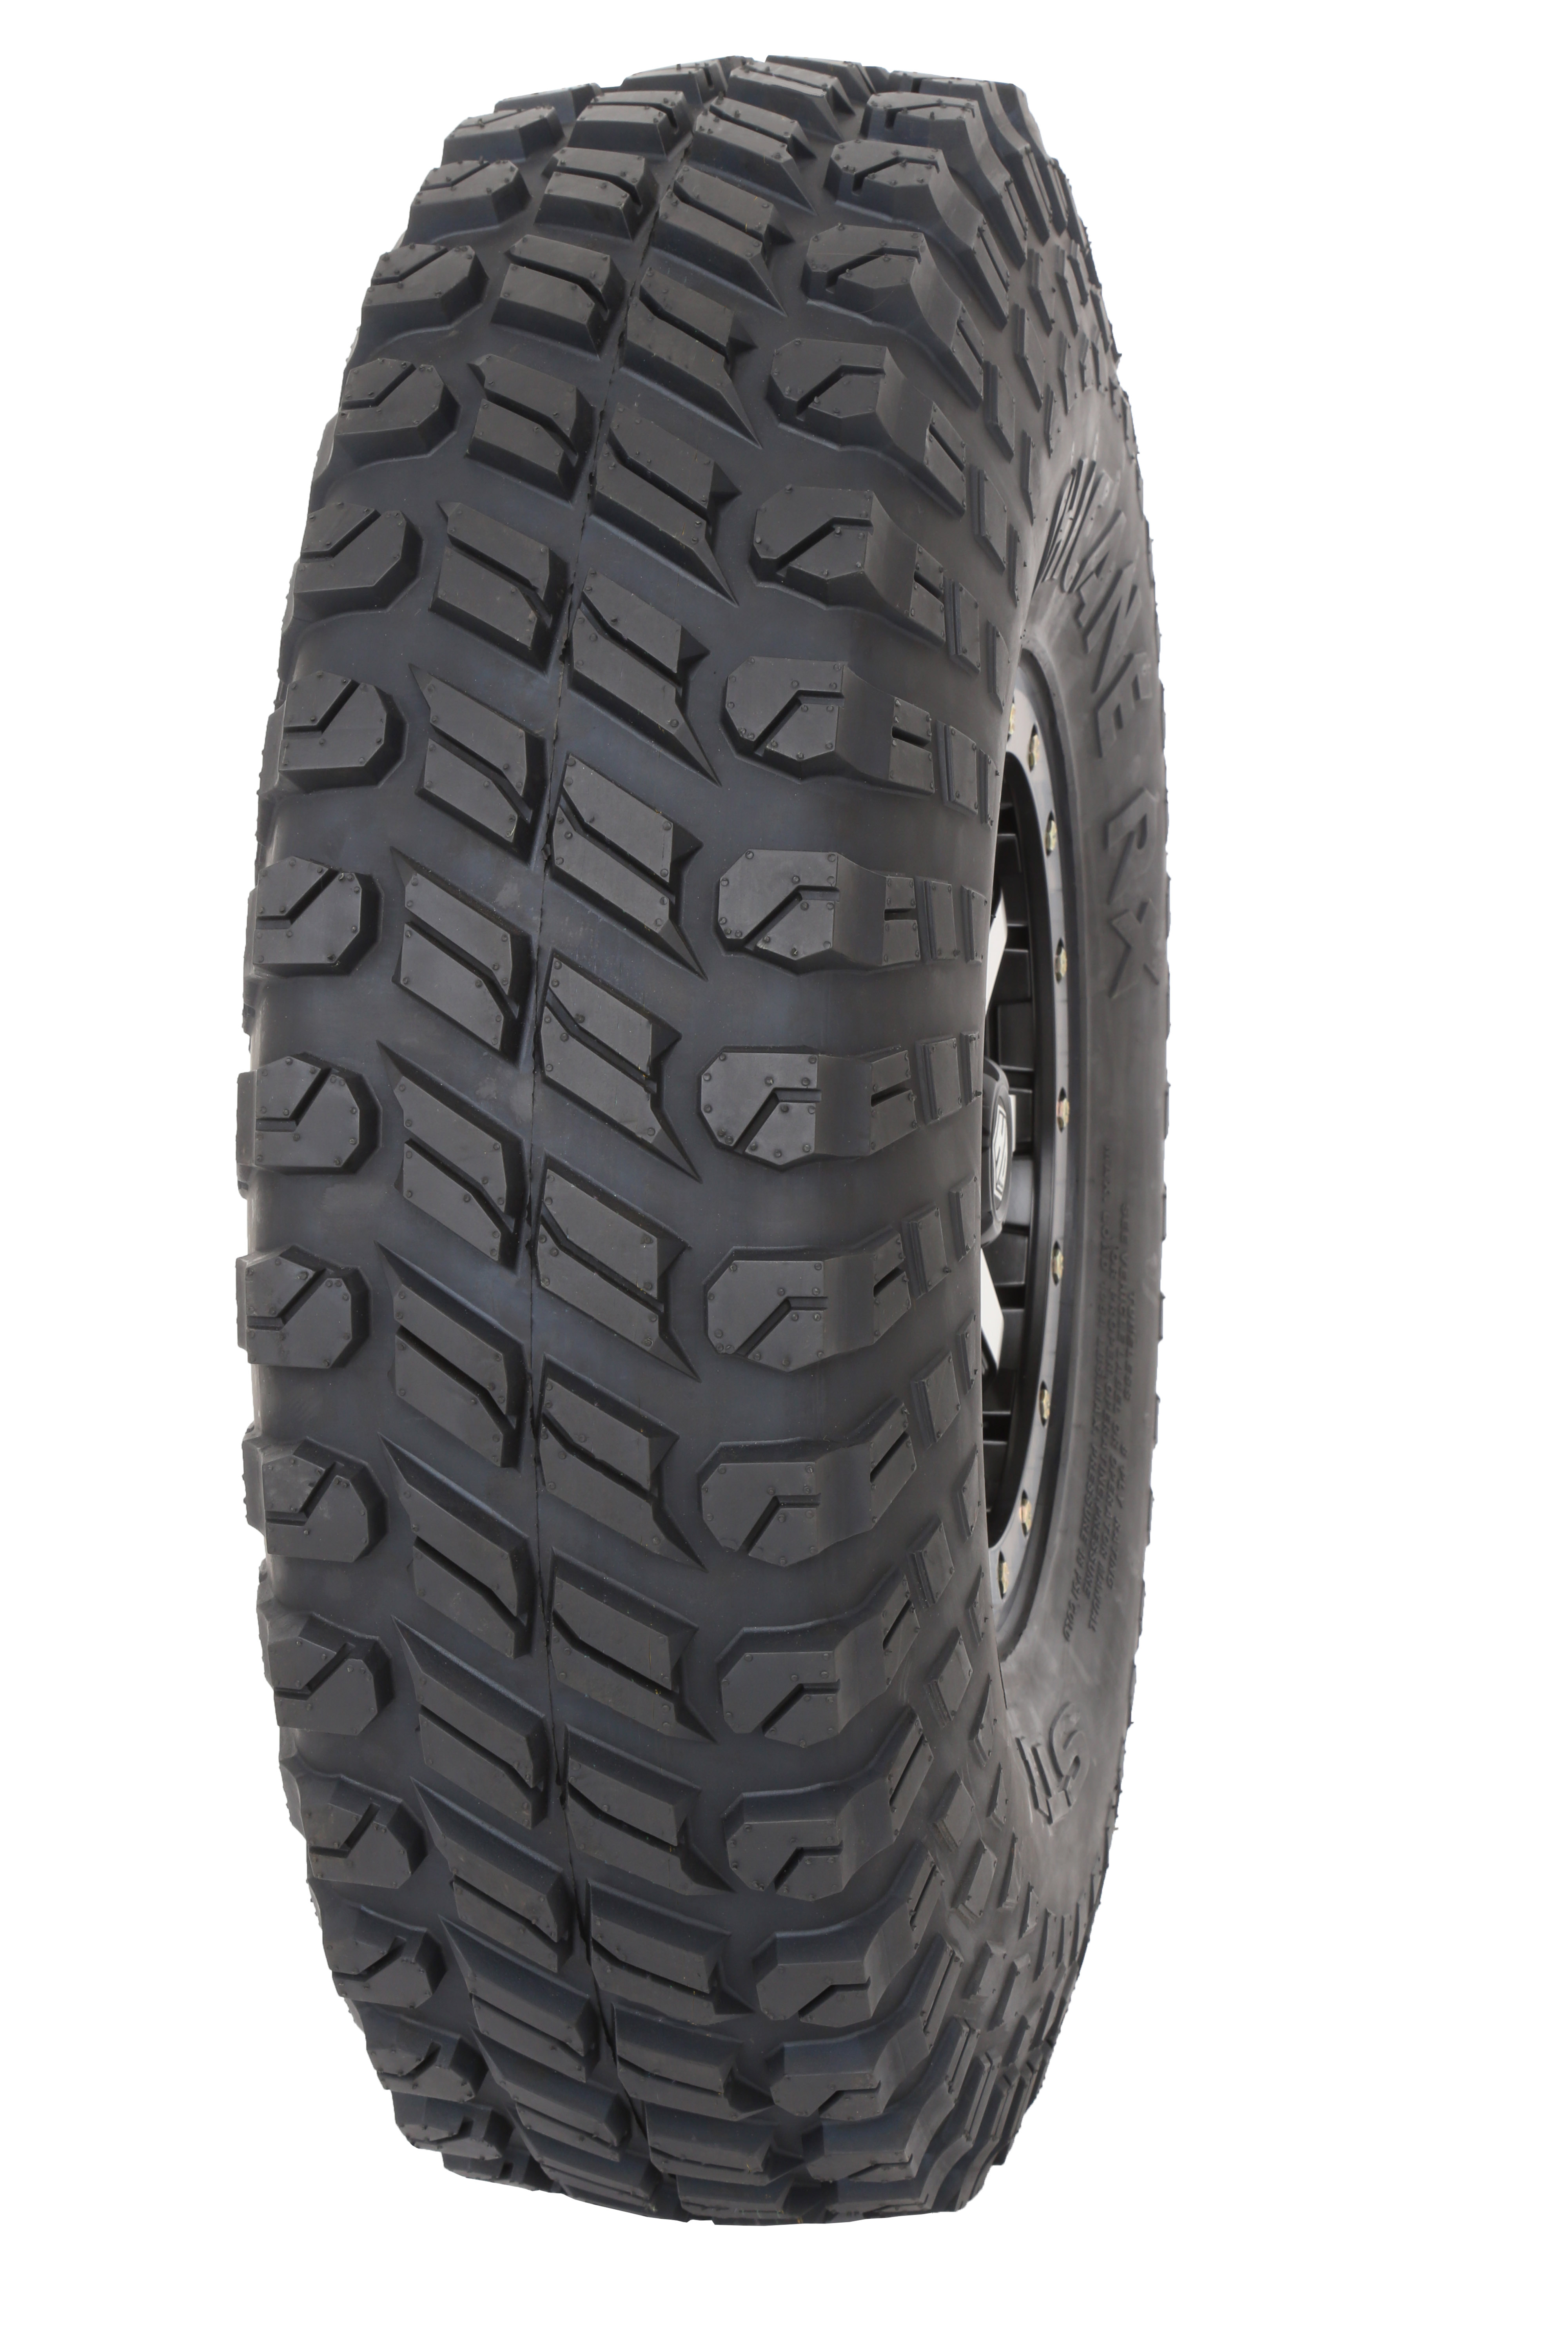 35-inch STI Chicane tire